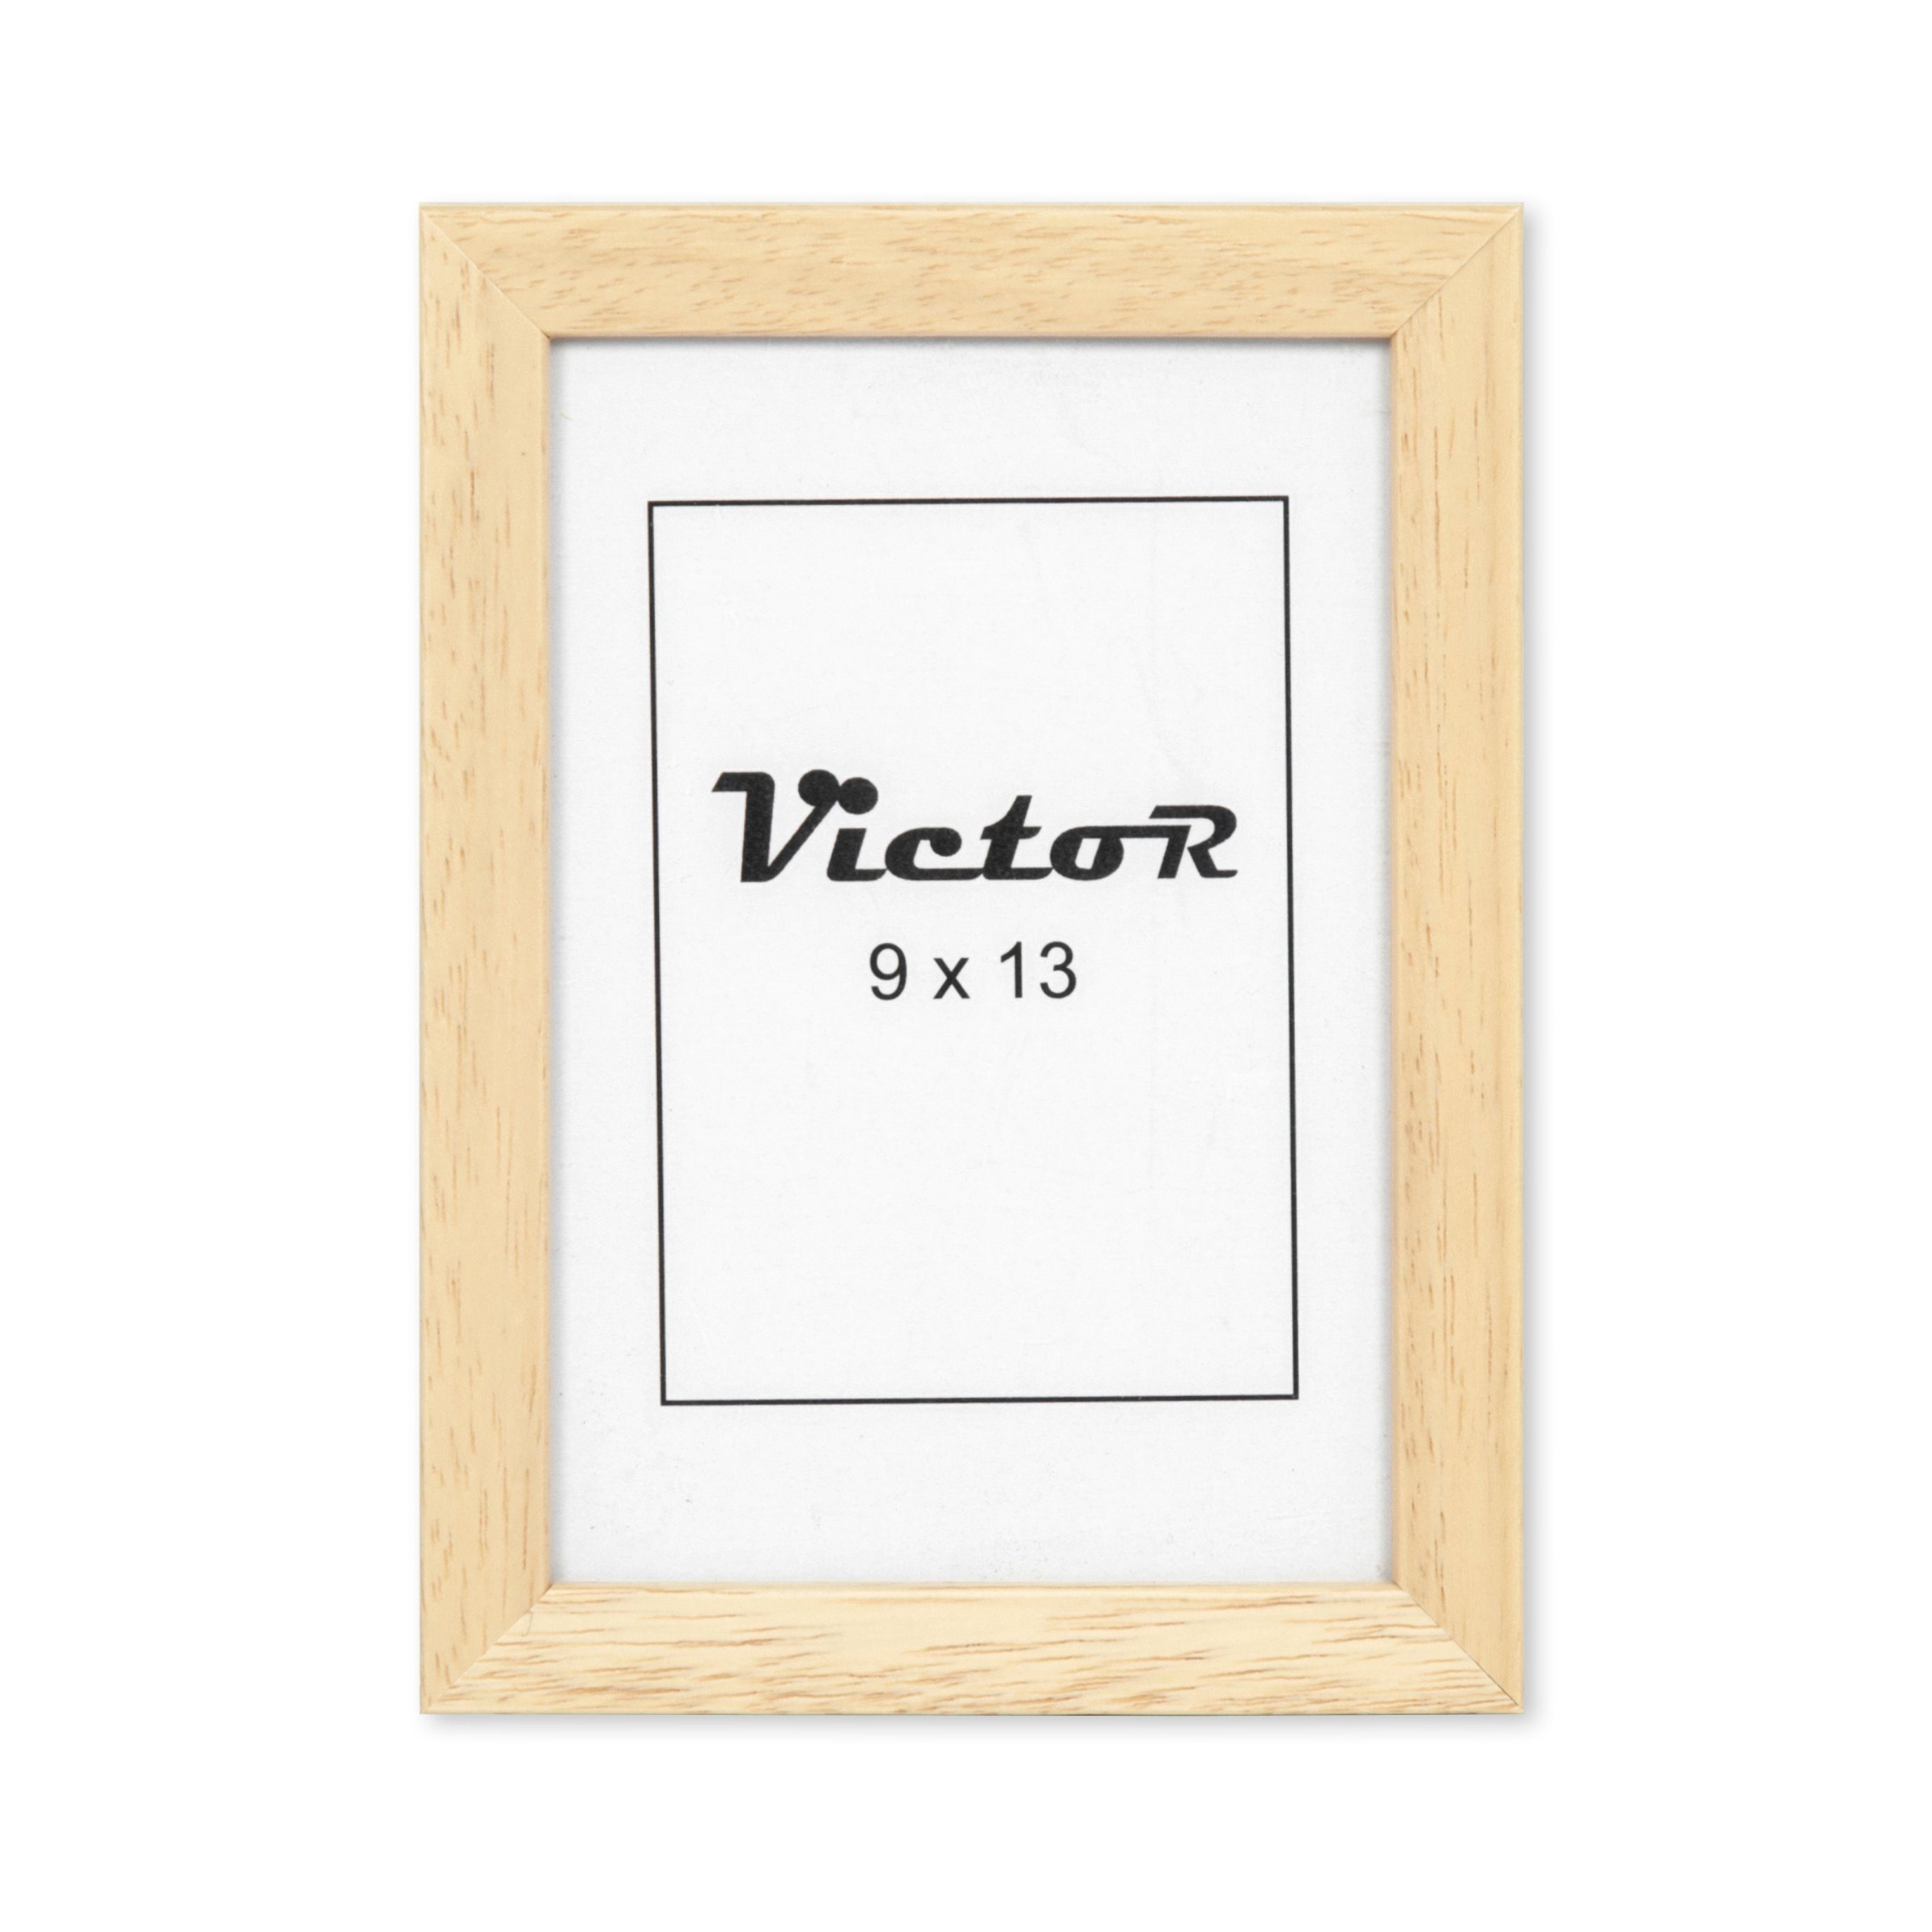 Victor (Zenith) Bilderrahmen Nolde, Bilderrahmen Beige 9x13 cm, Bilderrahmen Holz